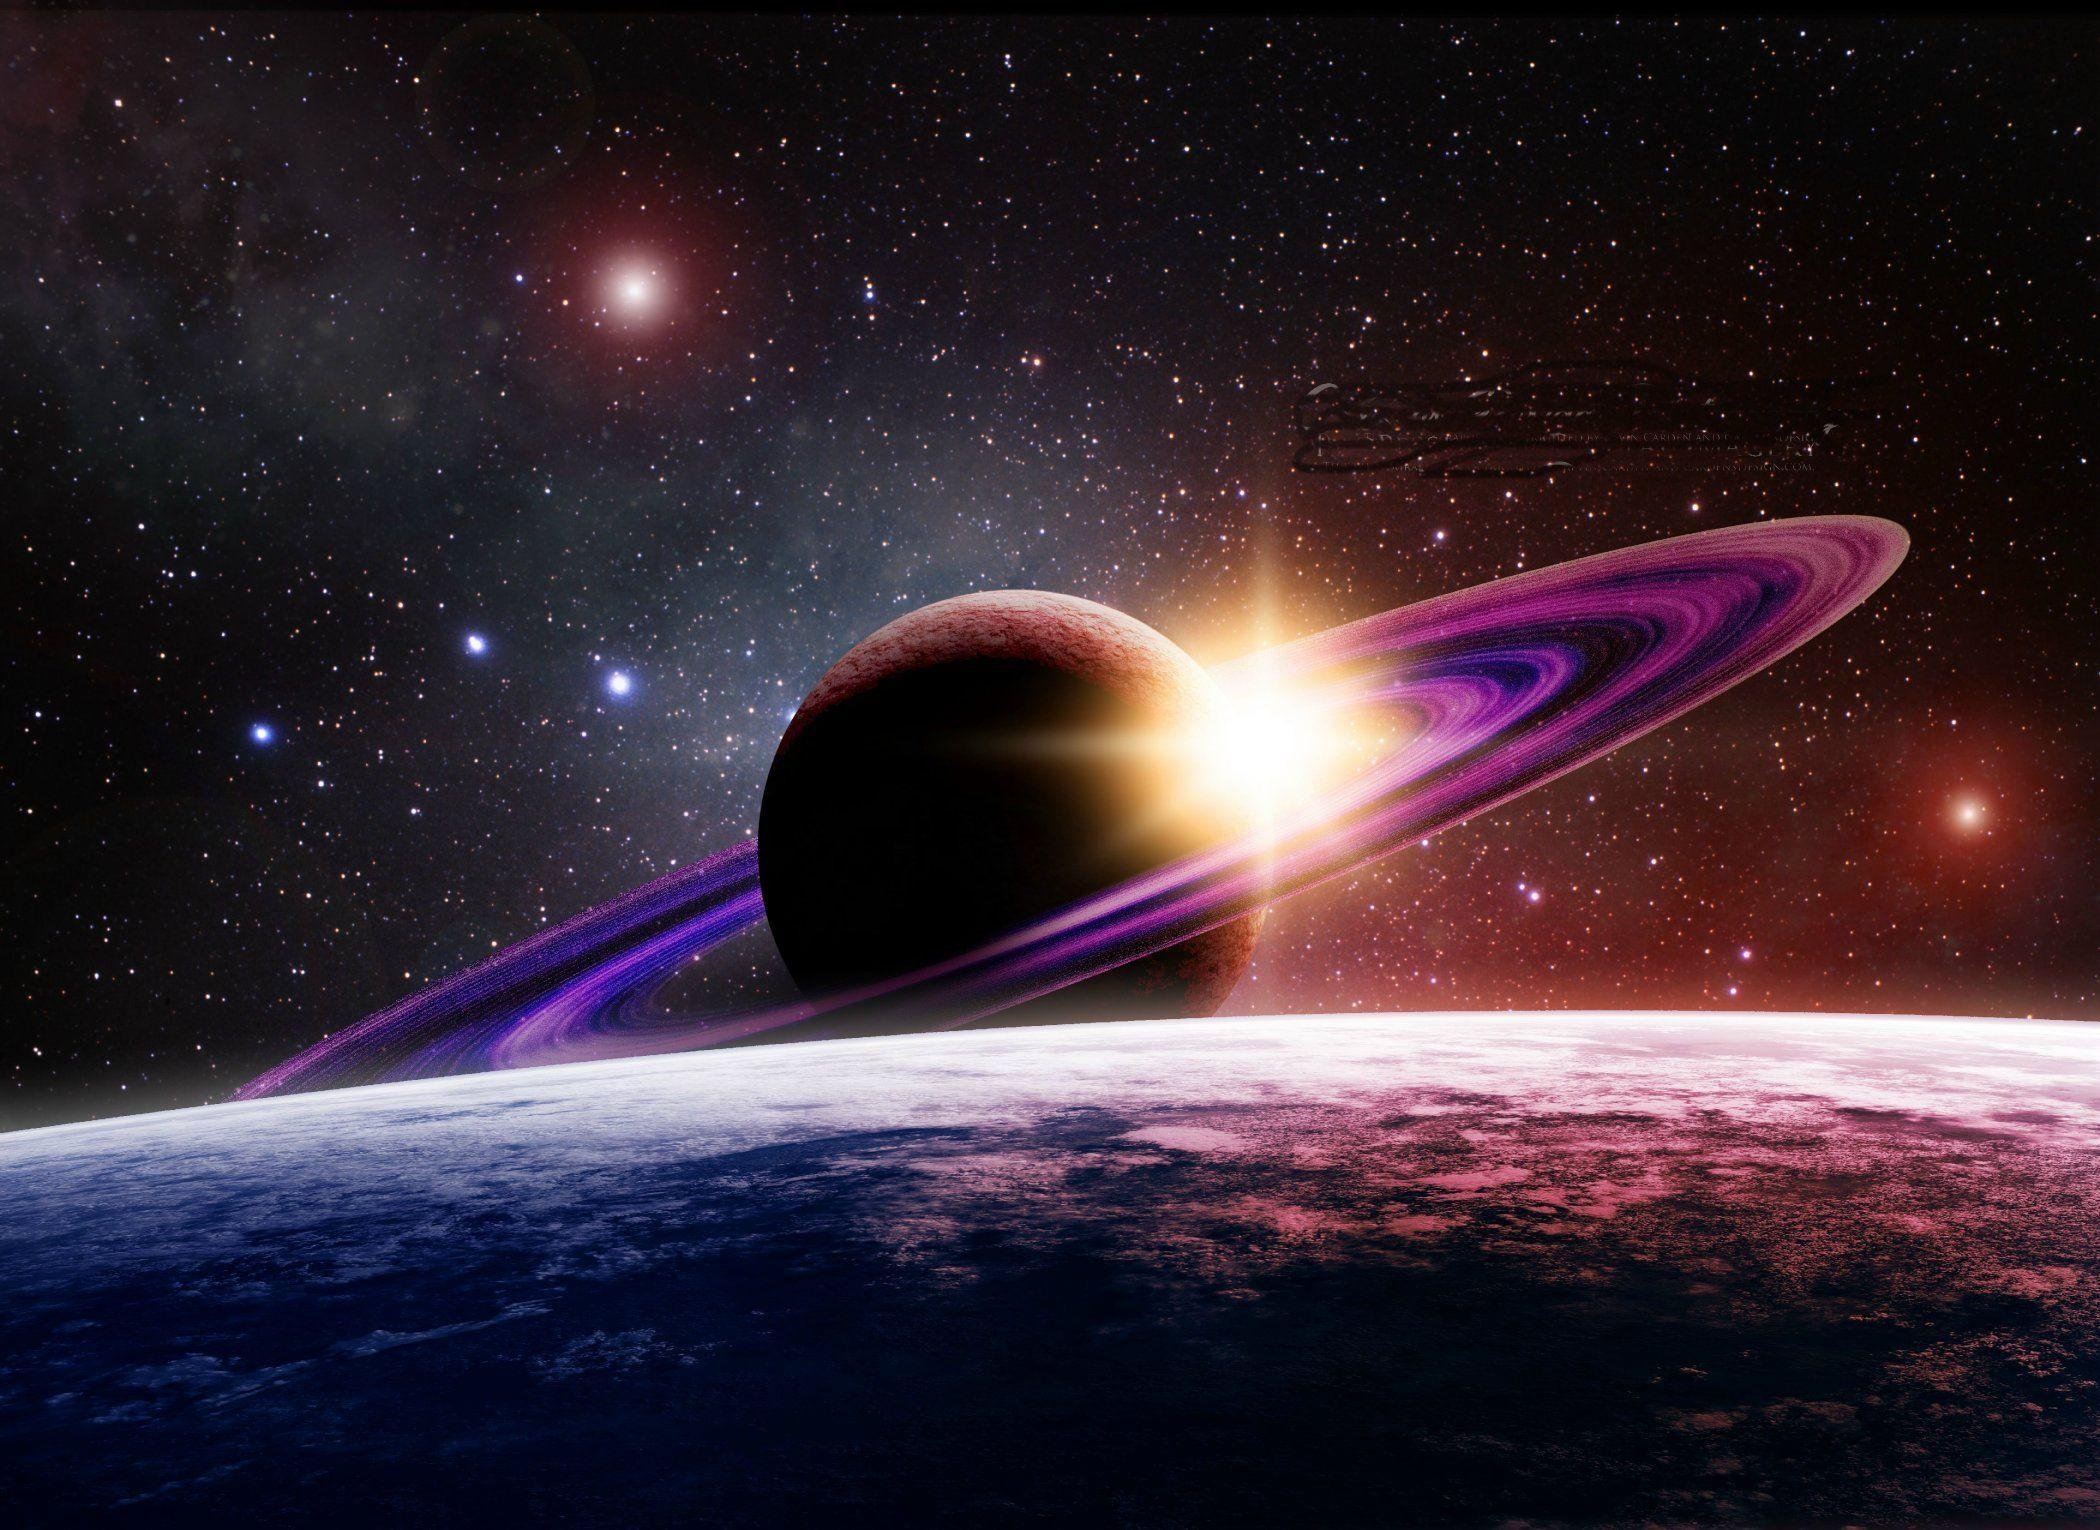 Saturno desde la tierra